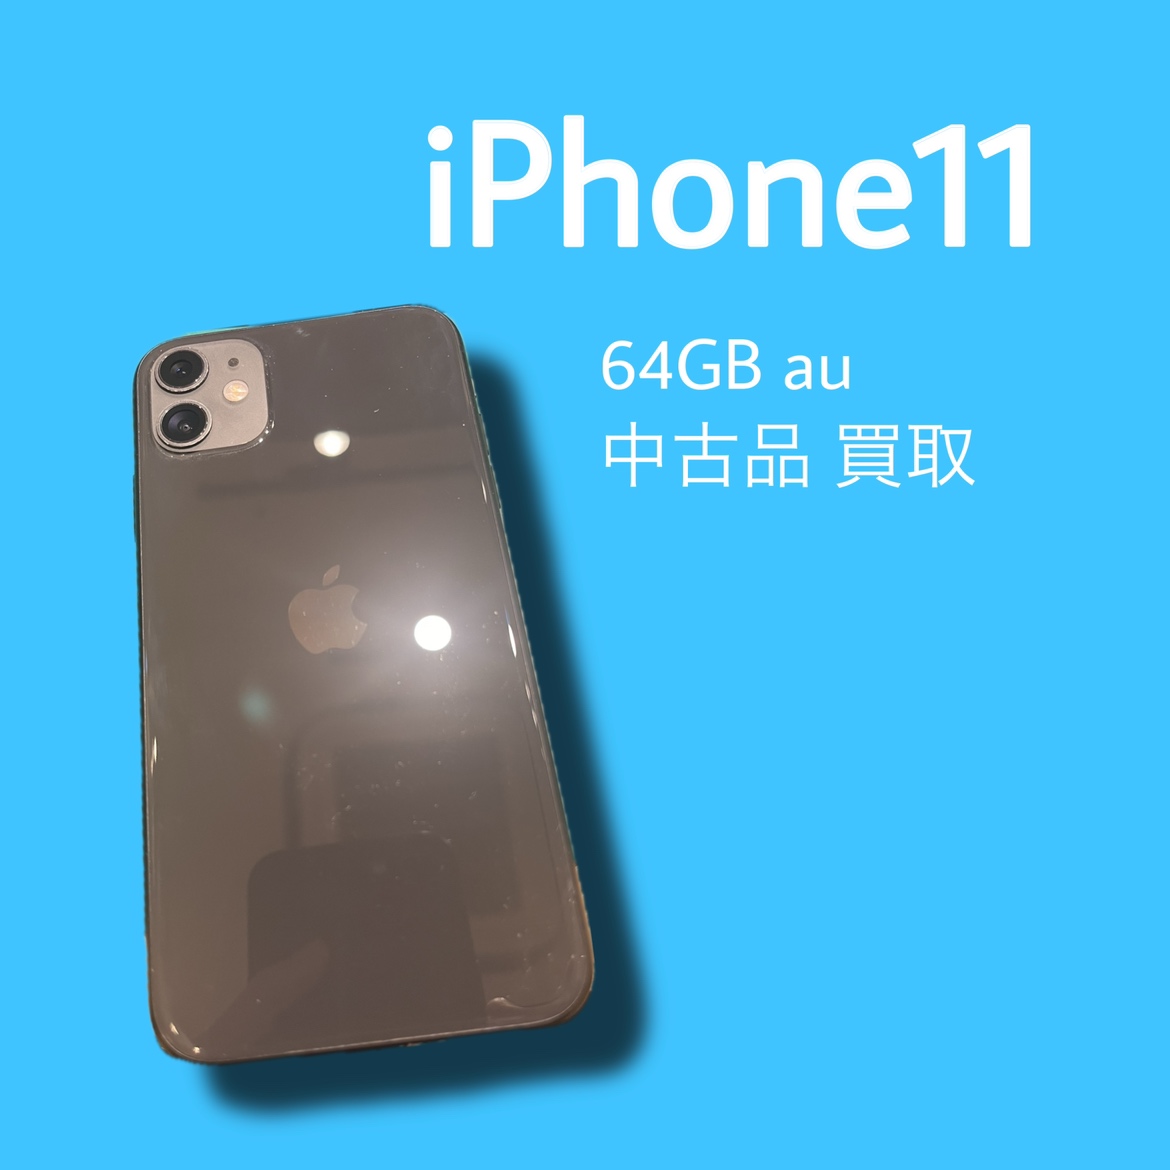 iPhone11・64GB・au・△・中古品【天神地下街店】